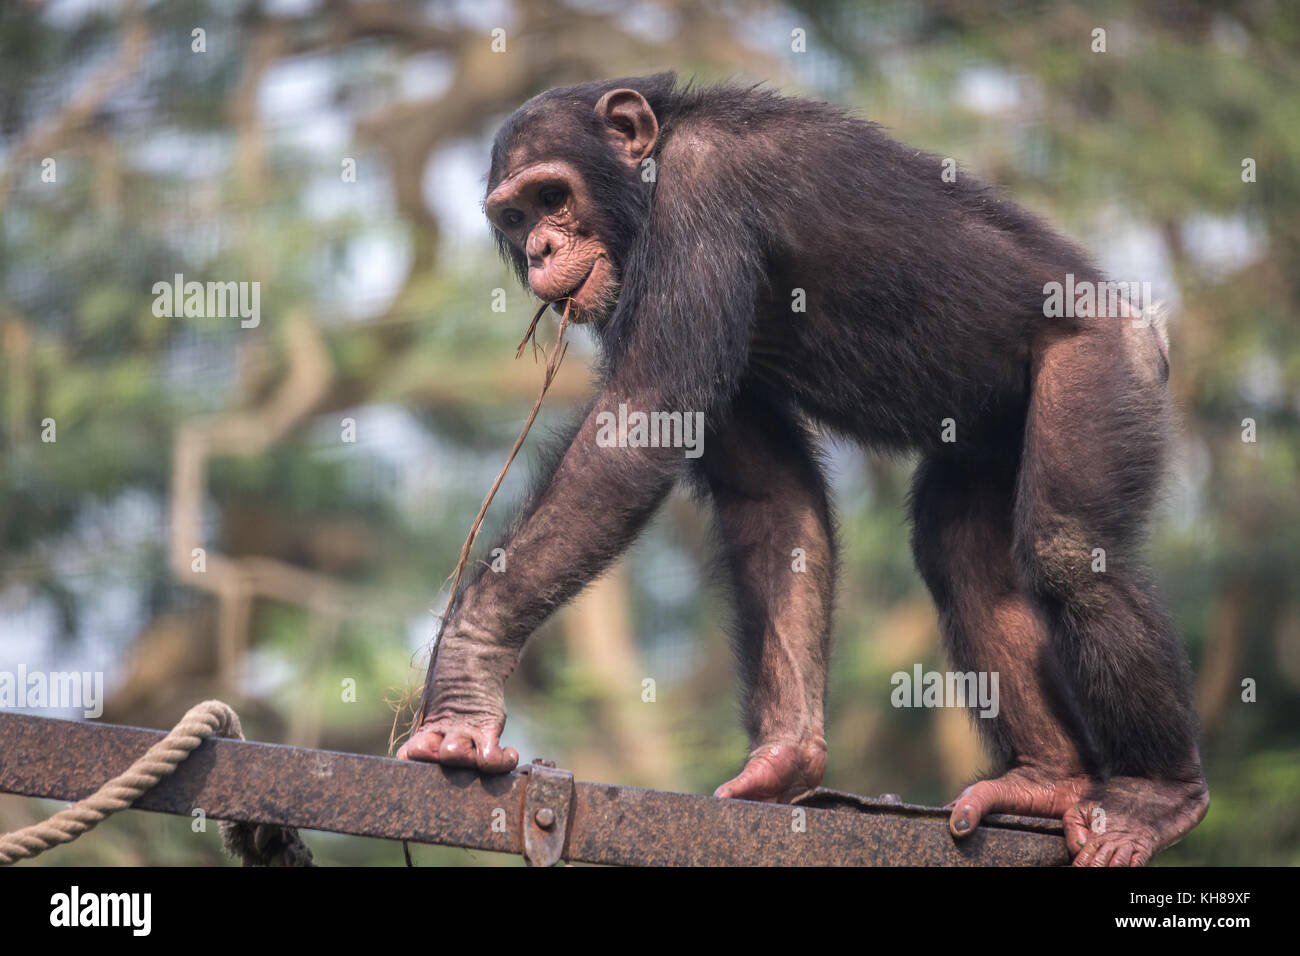 El chimpancé de muy buen humor. los chimpancés entre todos los primates presentan rasgos conductuales más cercano al de los seres humanos Foto de stock